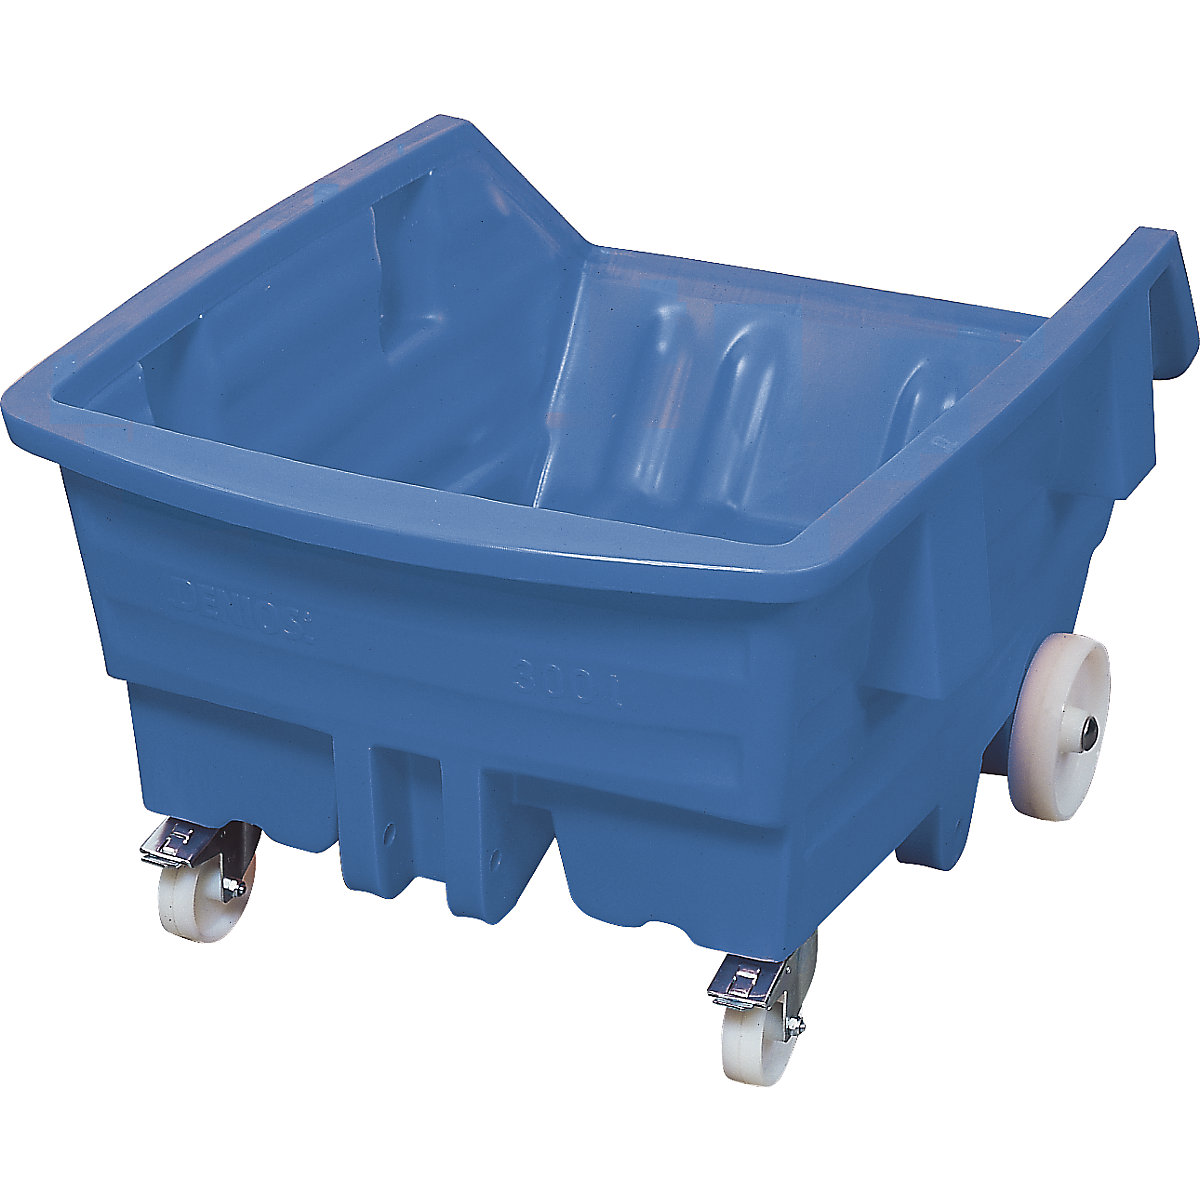 Kippbehälter aus Polyethylen, mit Rollen, Volumen 0,75 m³, blau-10